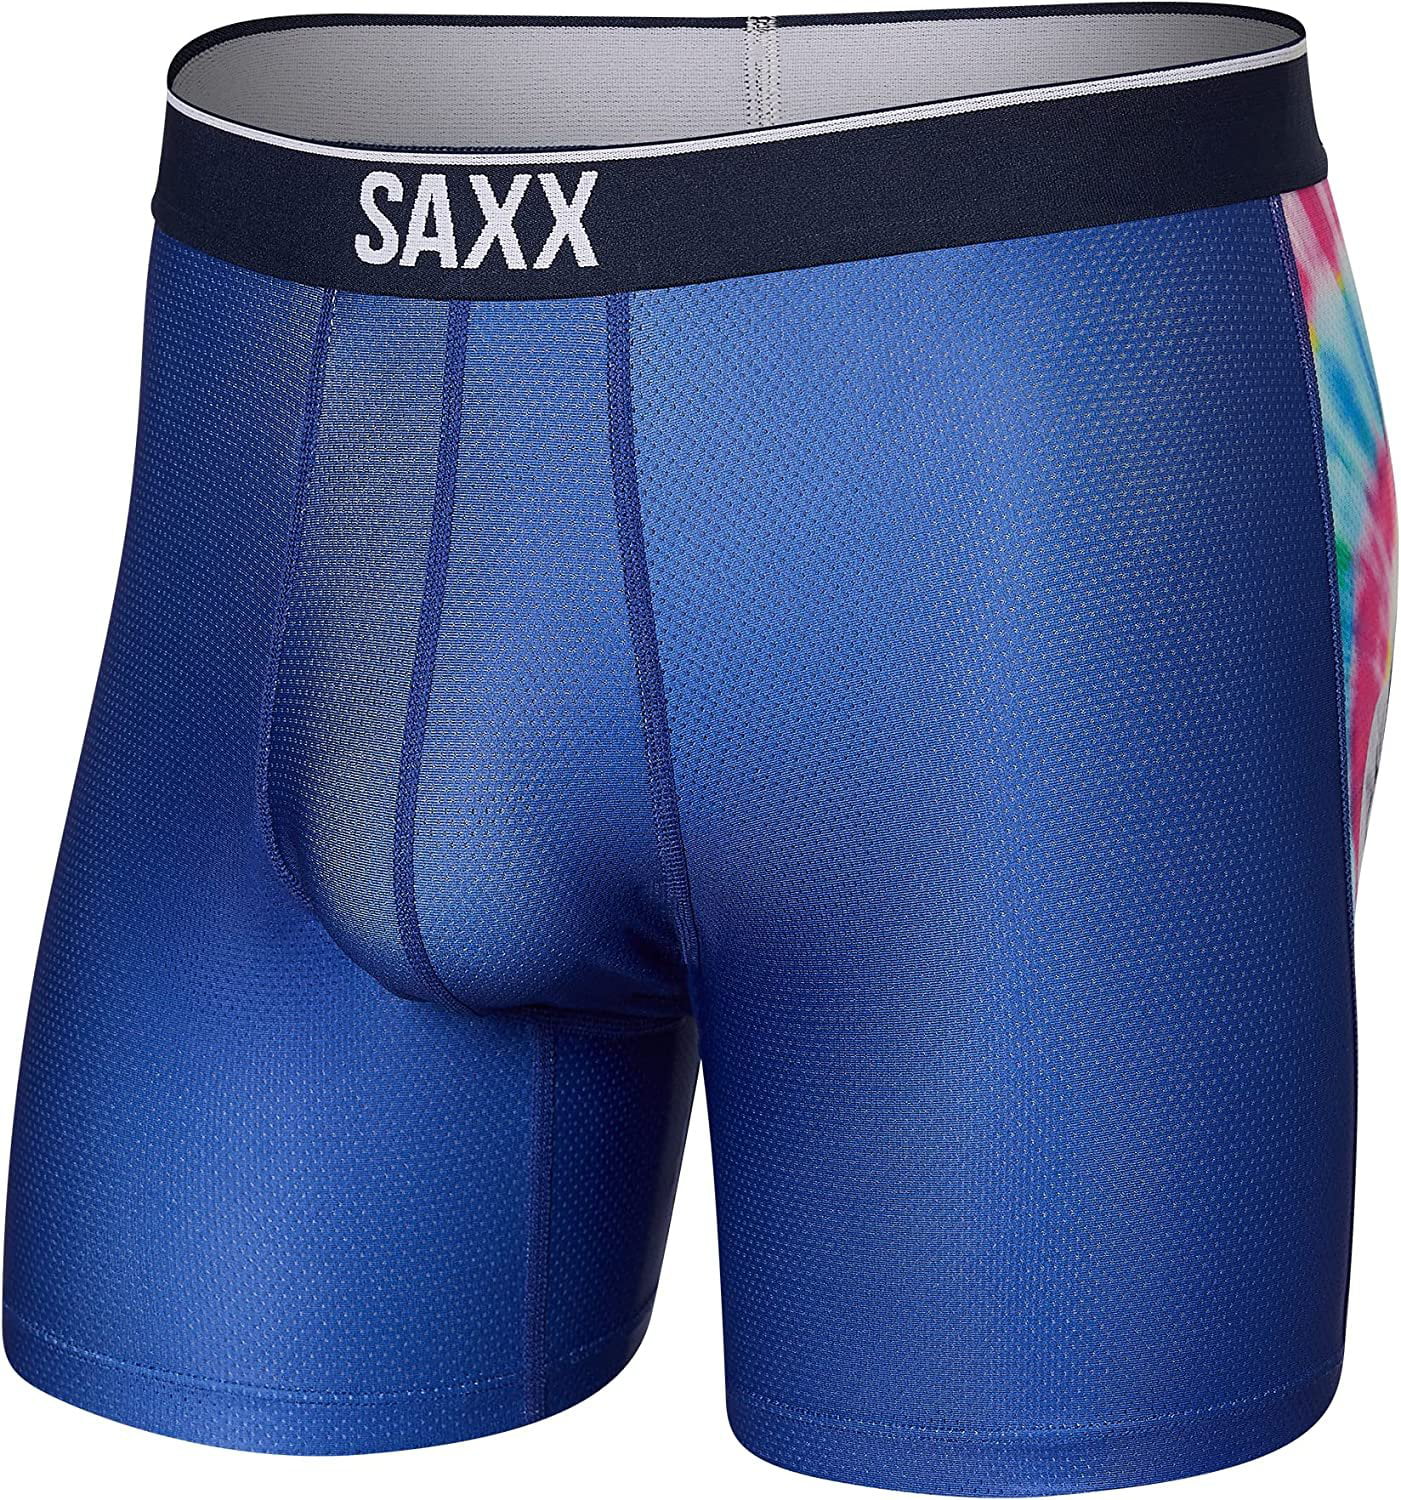 SAXX Men's Underwear VOLT Breathable Mesh Boxer Briefs with Built-In ...